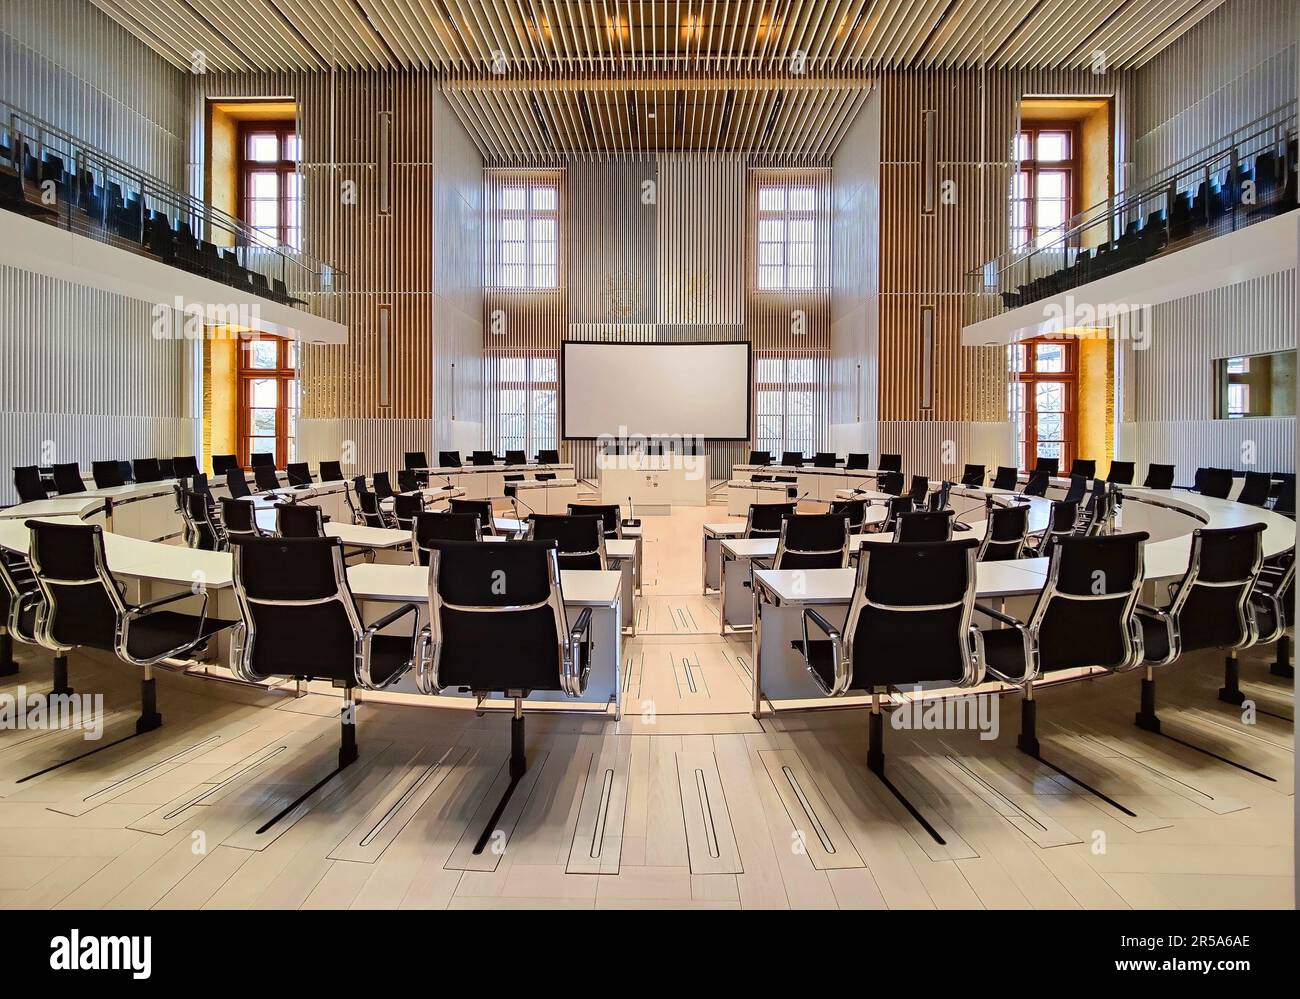 Nouvelle salle plénière du Parlement d'Etat de Mecklembourg-Poméranie occidentale dans le château de Schwerin, Allemagne, Mecklembourg-Poméranie occidentale, Schwerin Banque D'Images